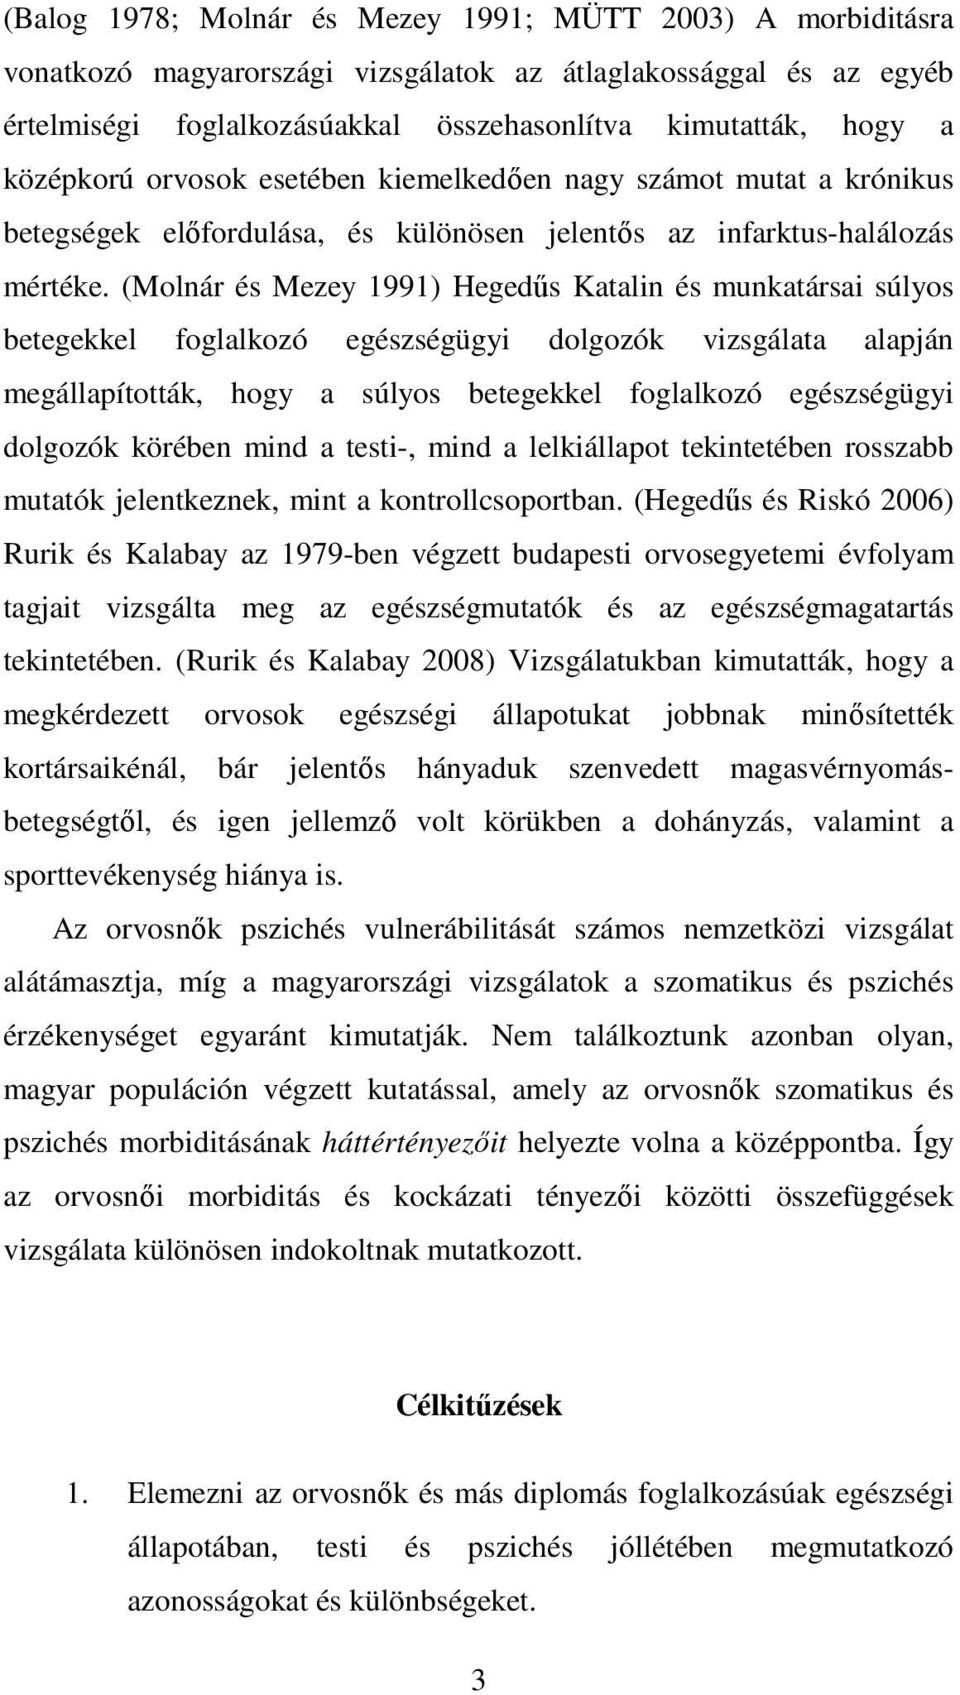 (Molnár és Mezey 1991) Hegedűs Katalin és munkatársai súlyos betegekkel foglalkozó egészségügyi dolgozók vizsgálata alapján megállapították, hogy a súlyos betegekkel foglalkozó egészségügyi dolgozók